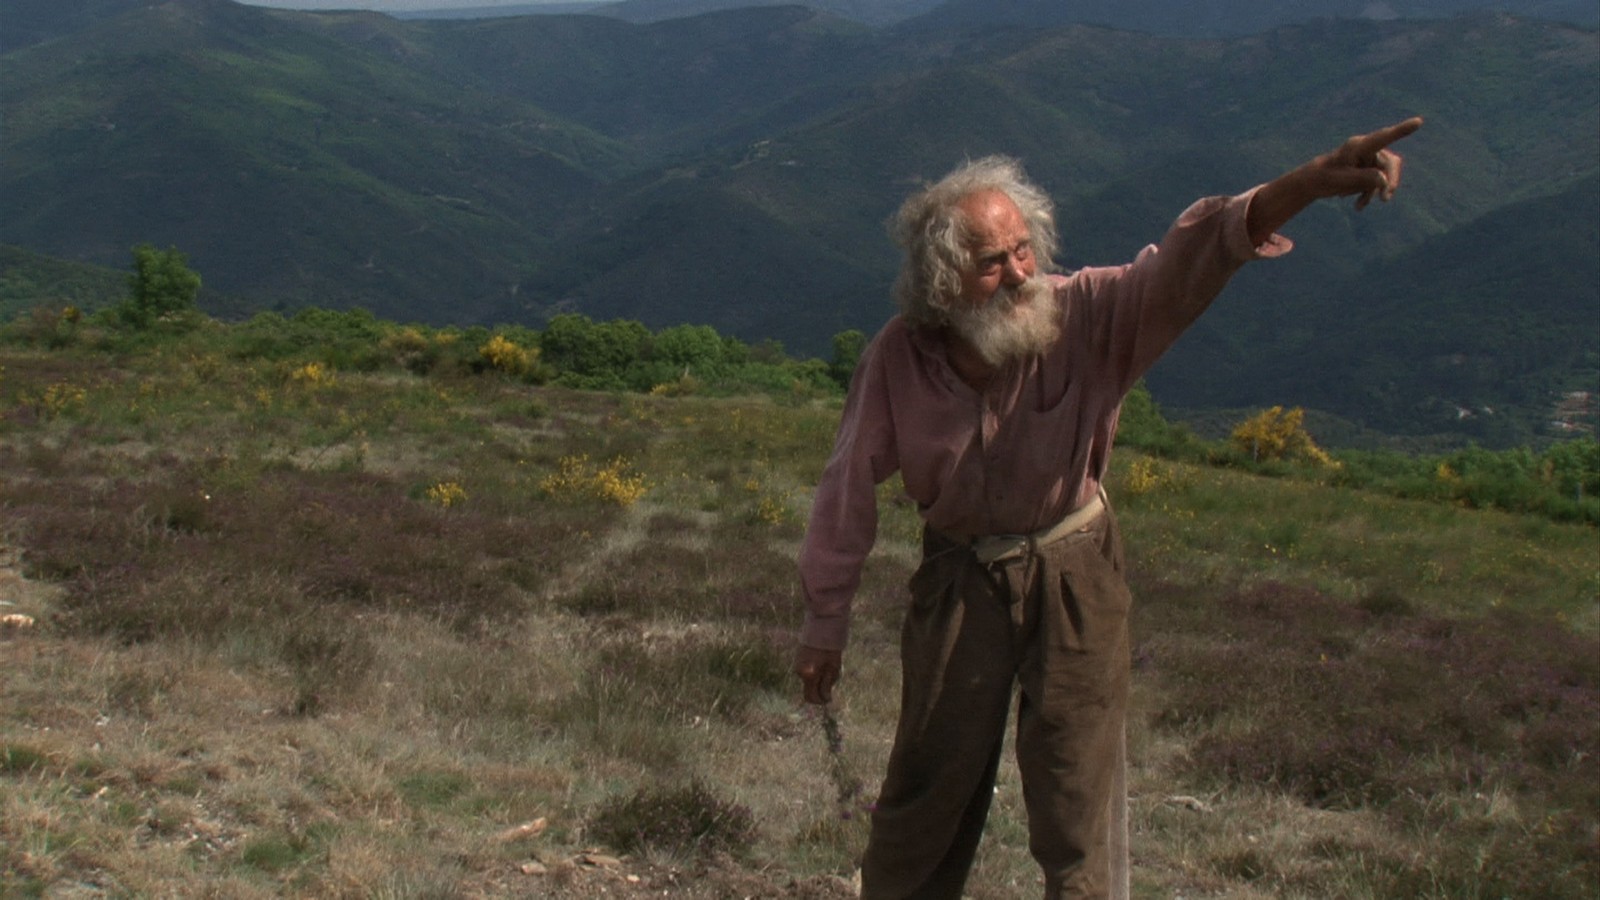 Diourka pointe du doigt un point au loin, dans un champ en plein coeur des montagnes